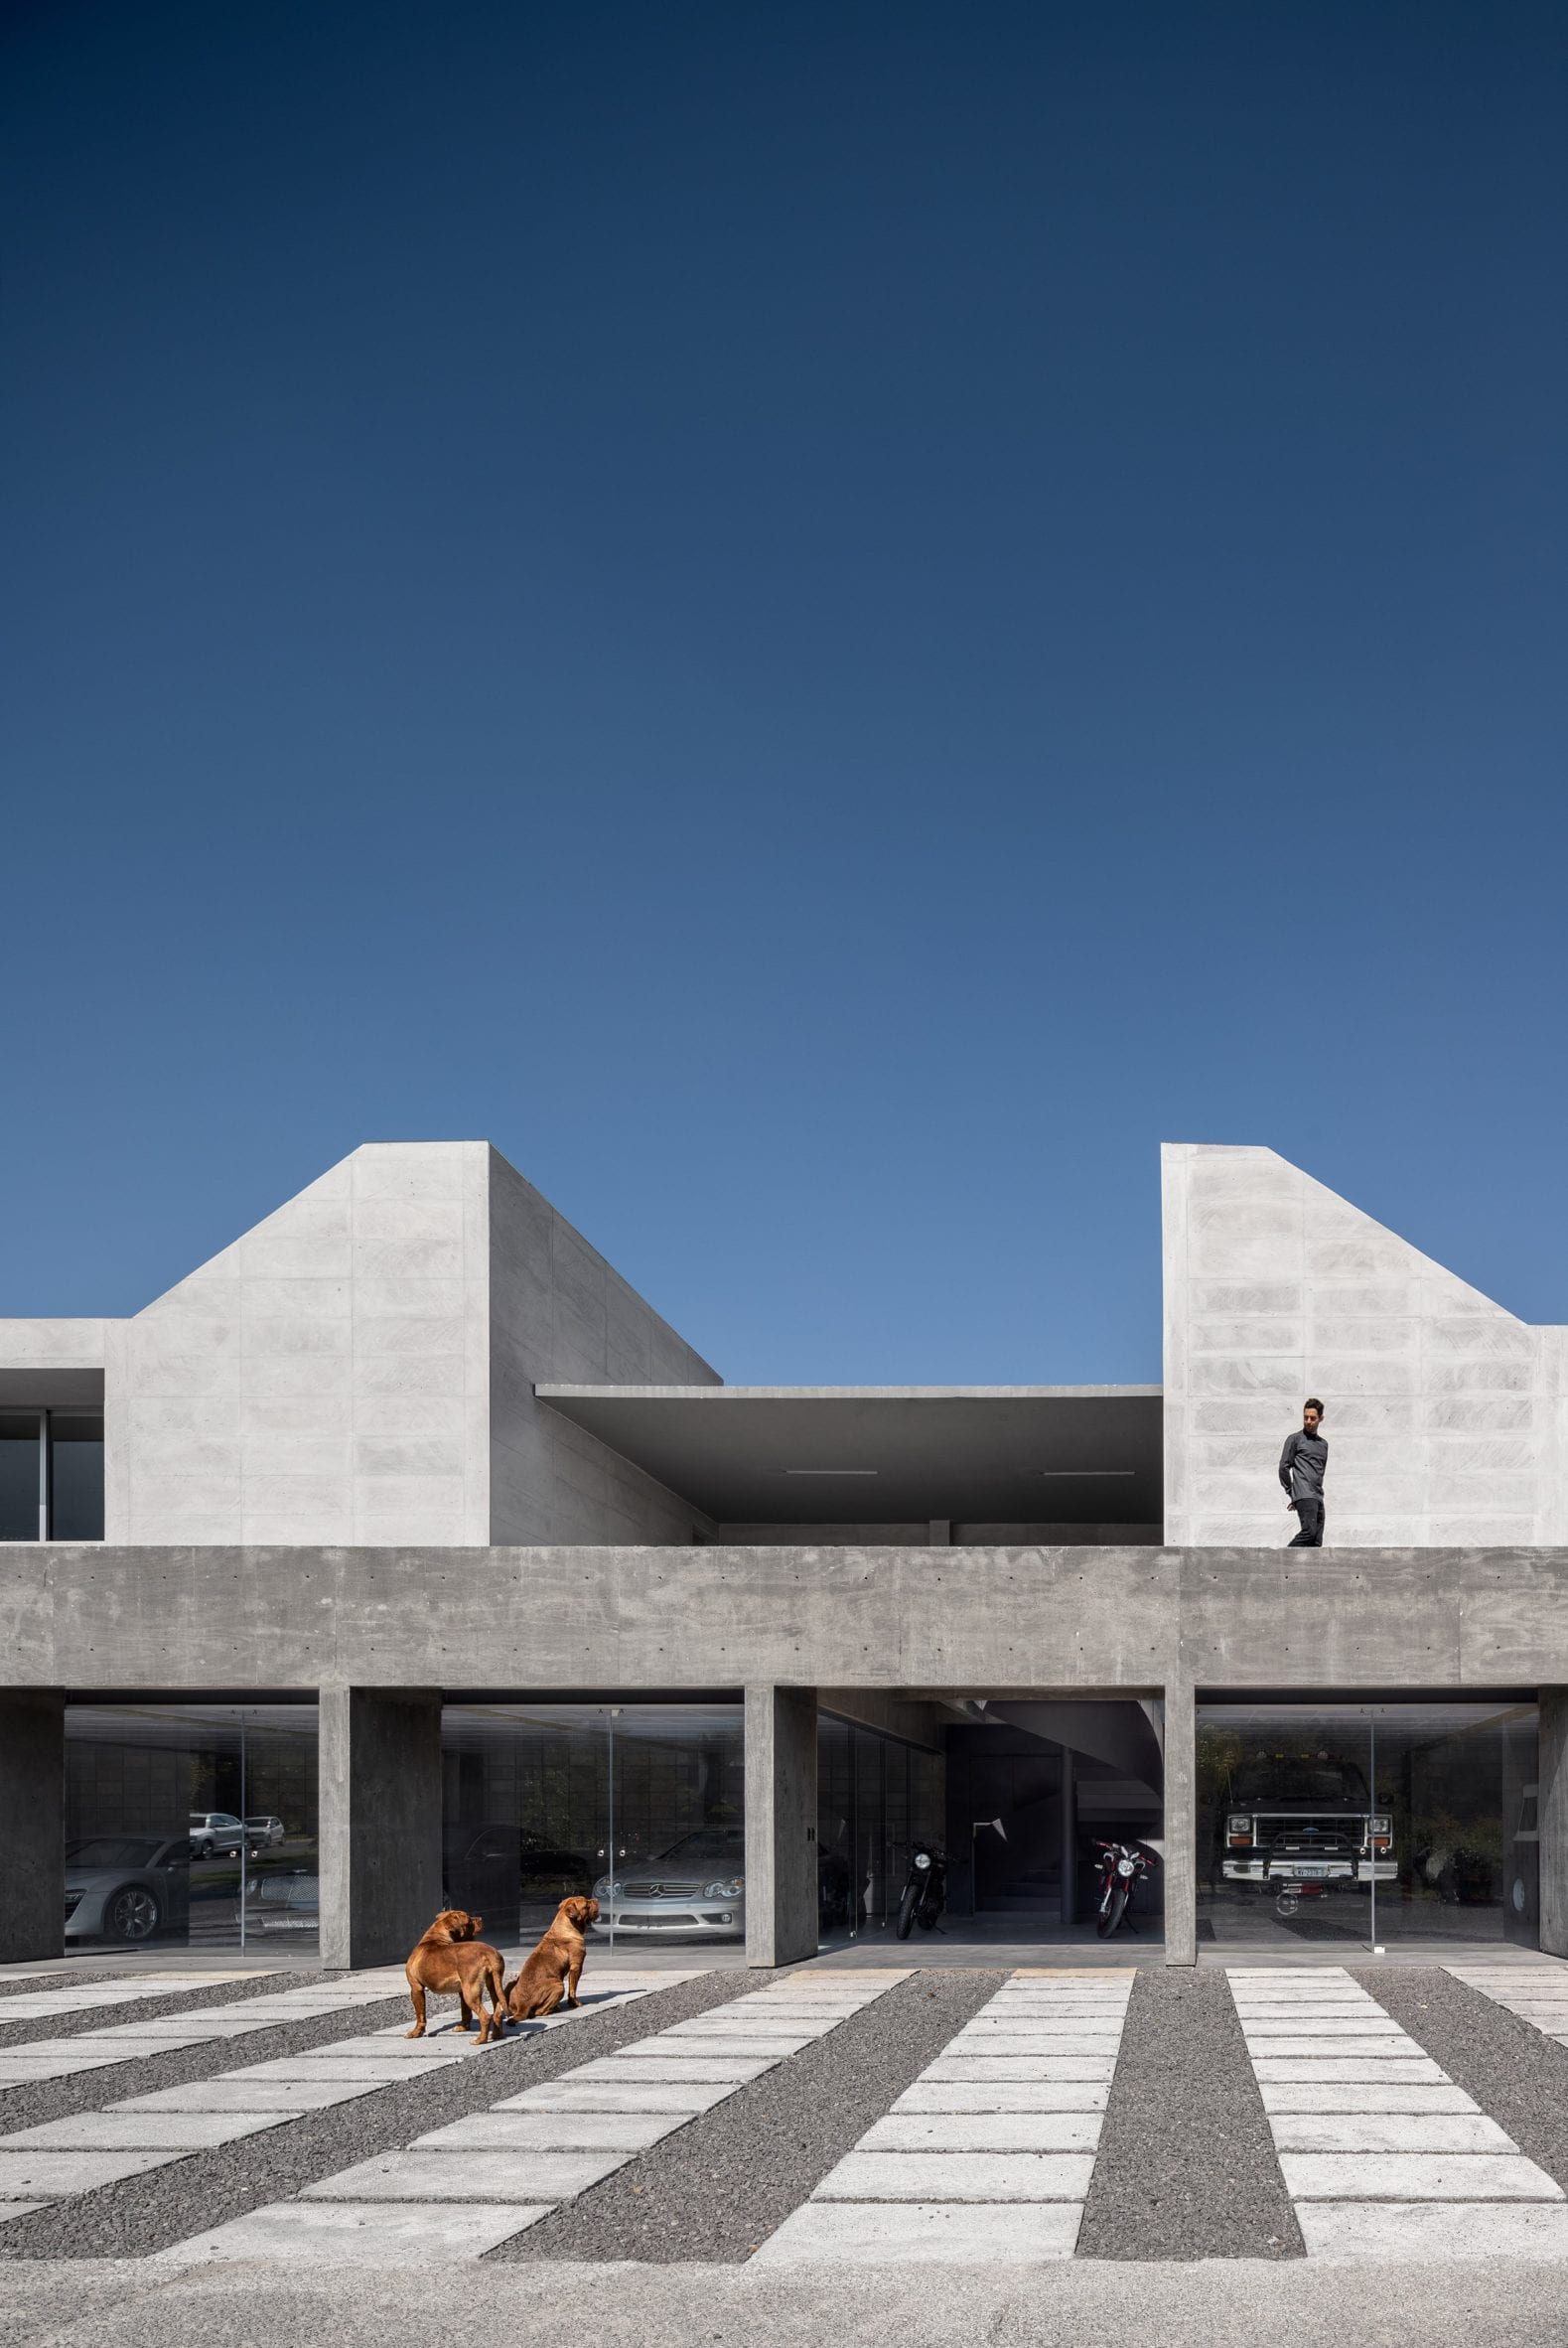 Morari Arquitectura designs concrete pavilion 